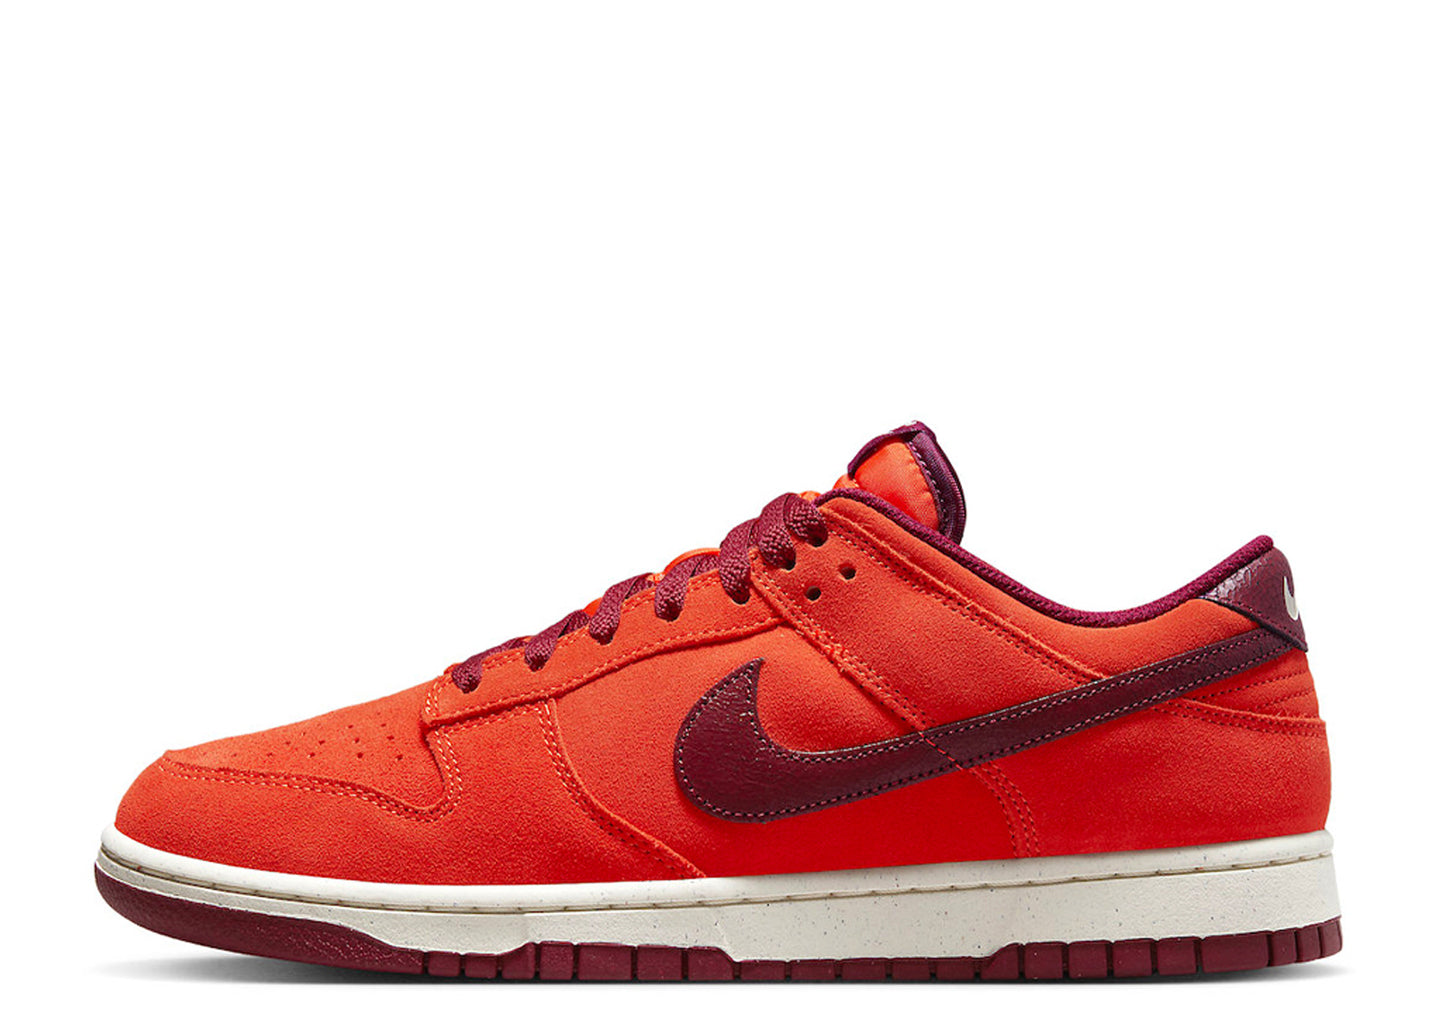 Nike Dunk Low Premium "Orange Suede"